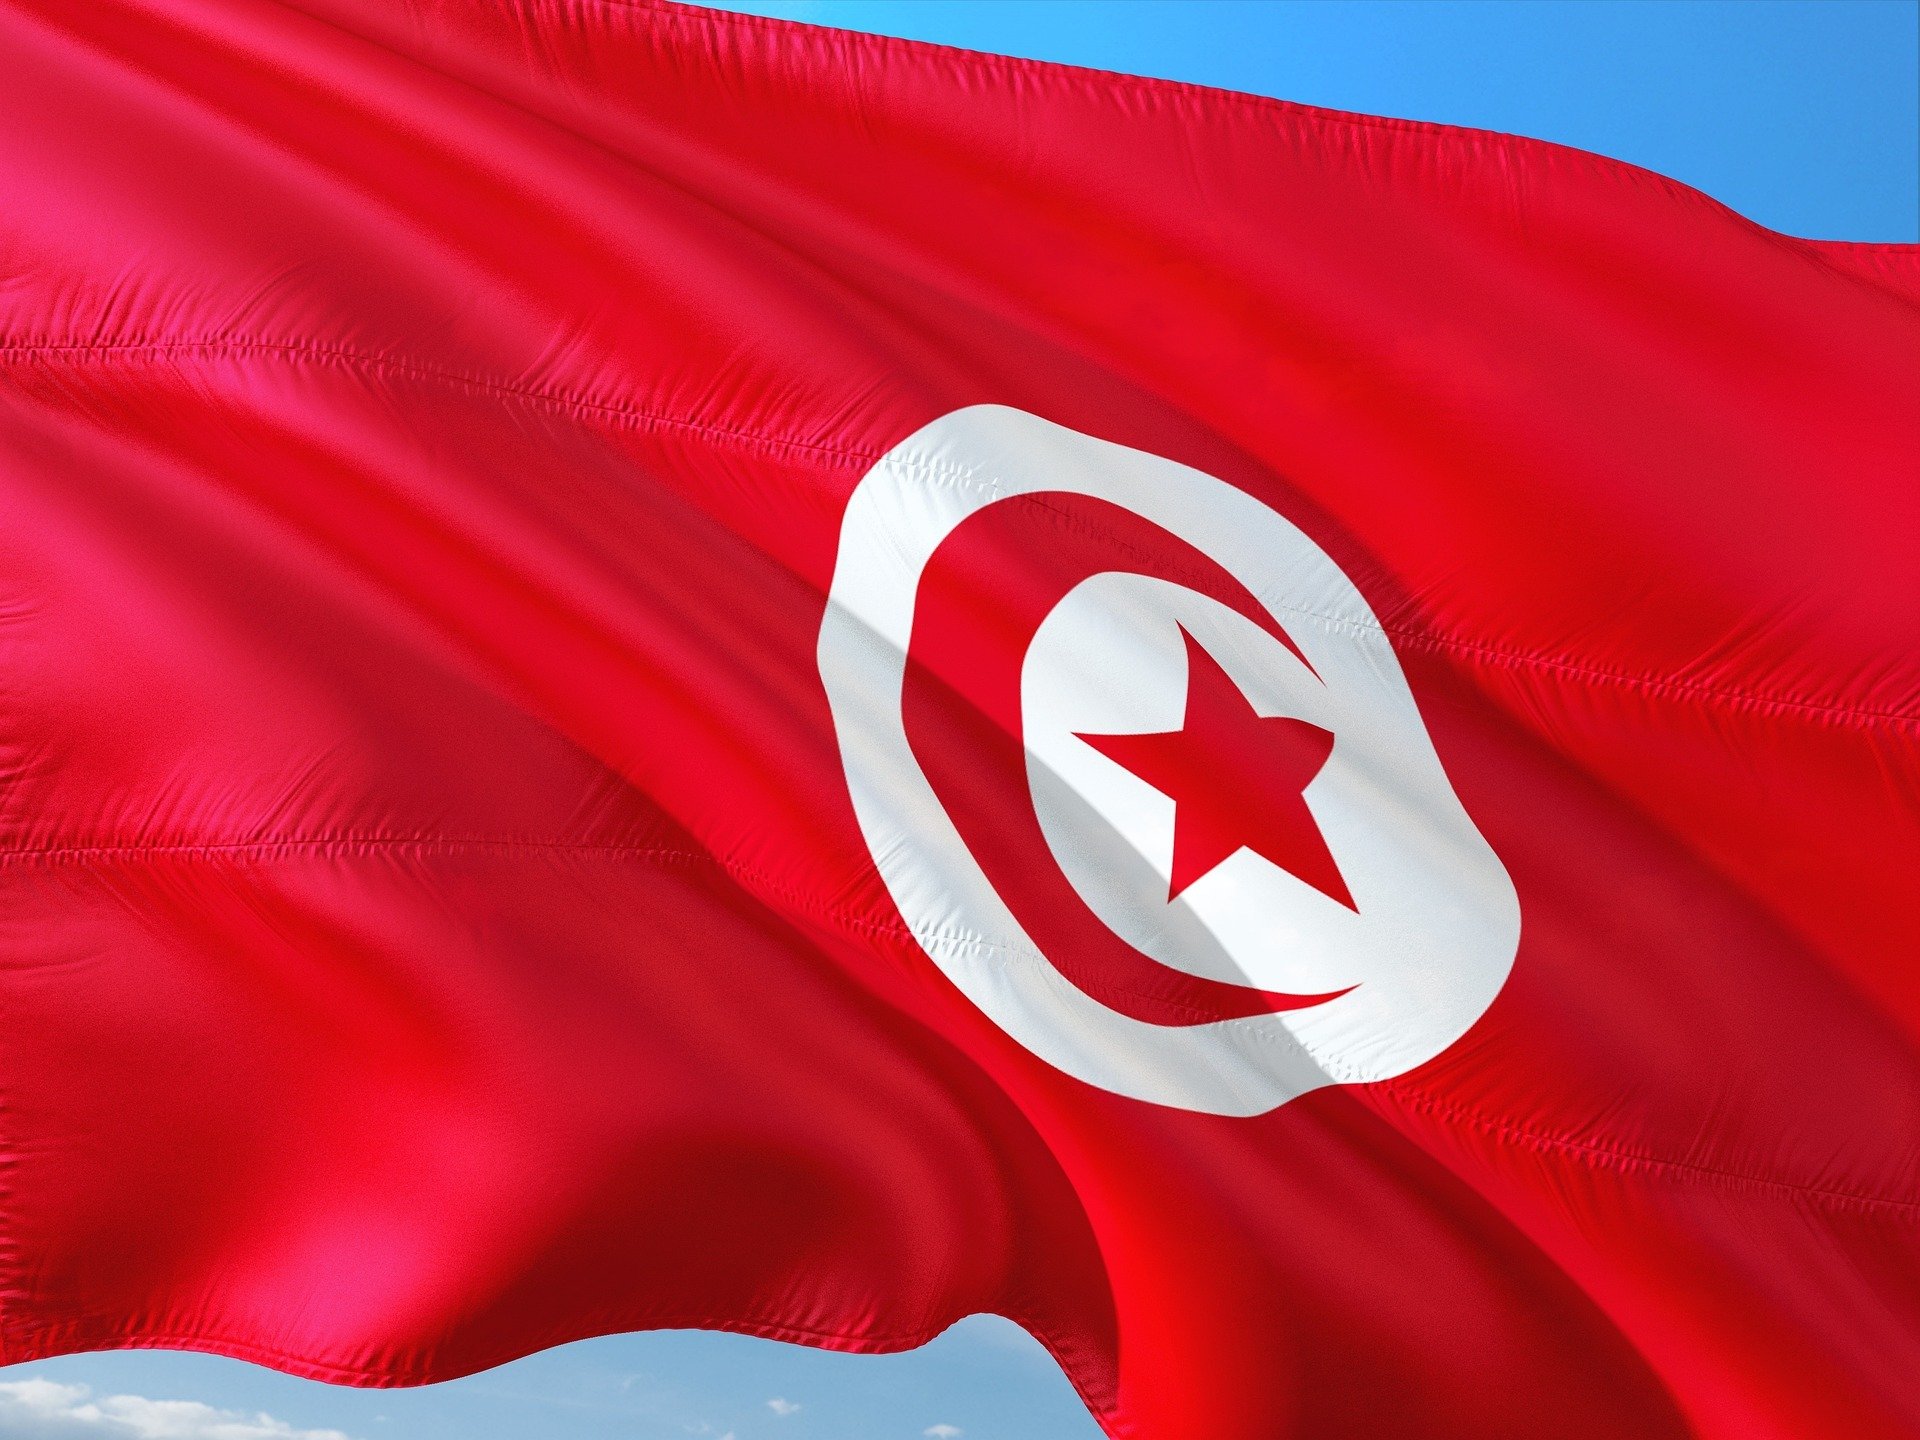 Atual campeã da Copa Kirin, a Tunísia irá disputar a Copa do Mundo pela 6ª vez. Confira quais são alguns dos melhores jogadores da Tunísia.